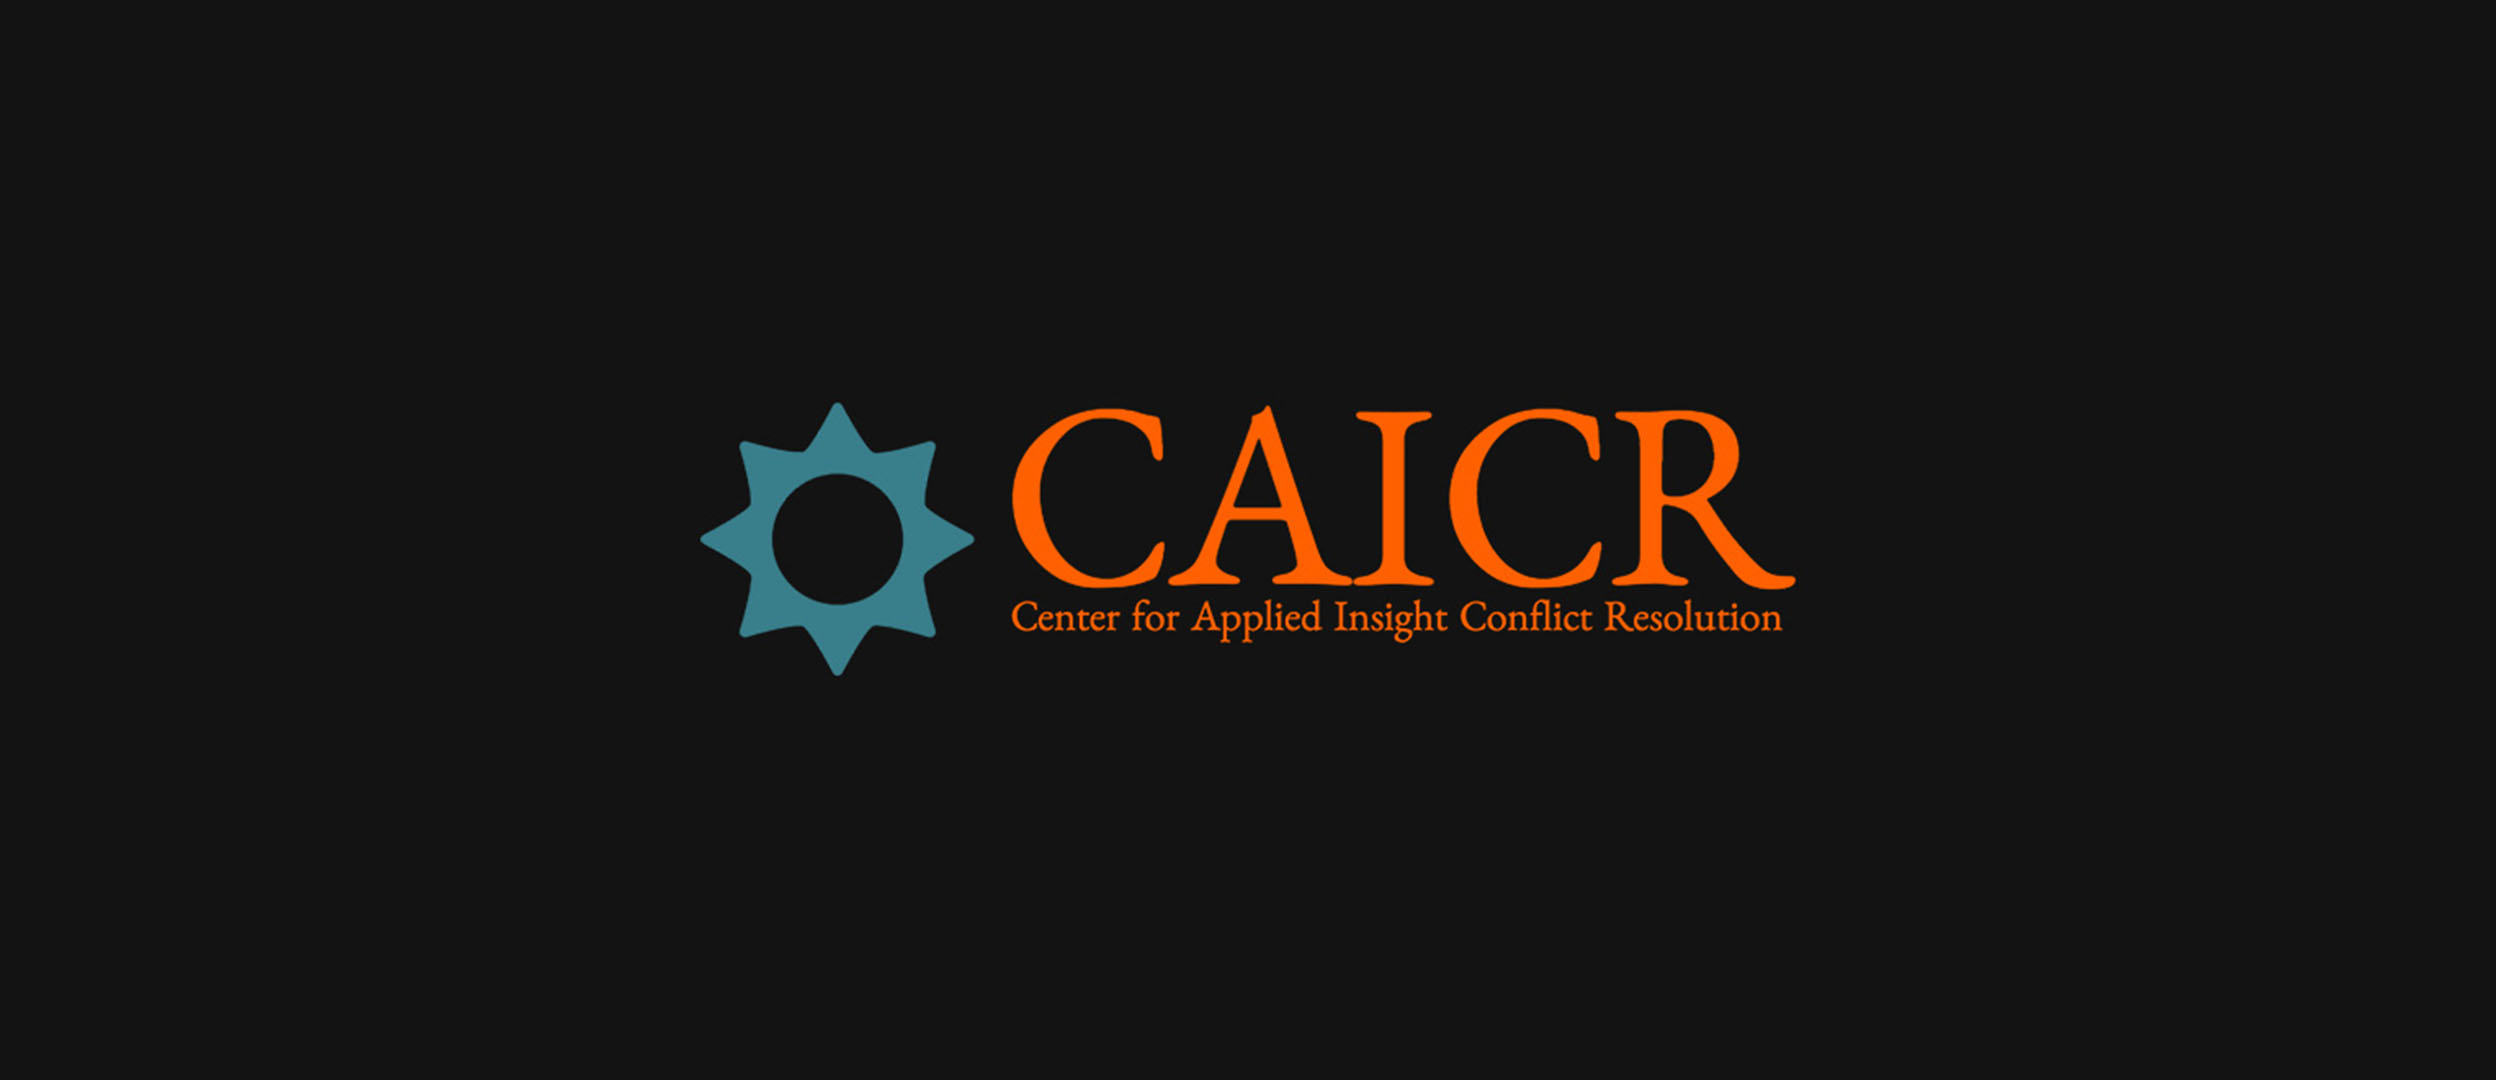 CAICR logo